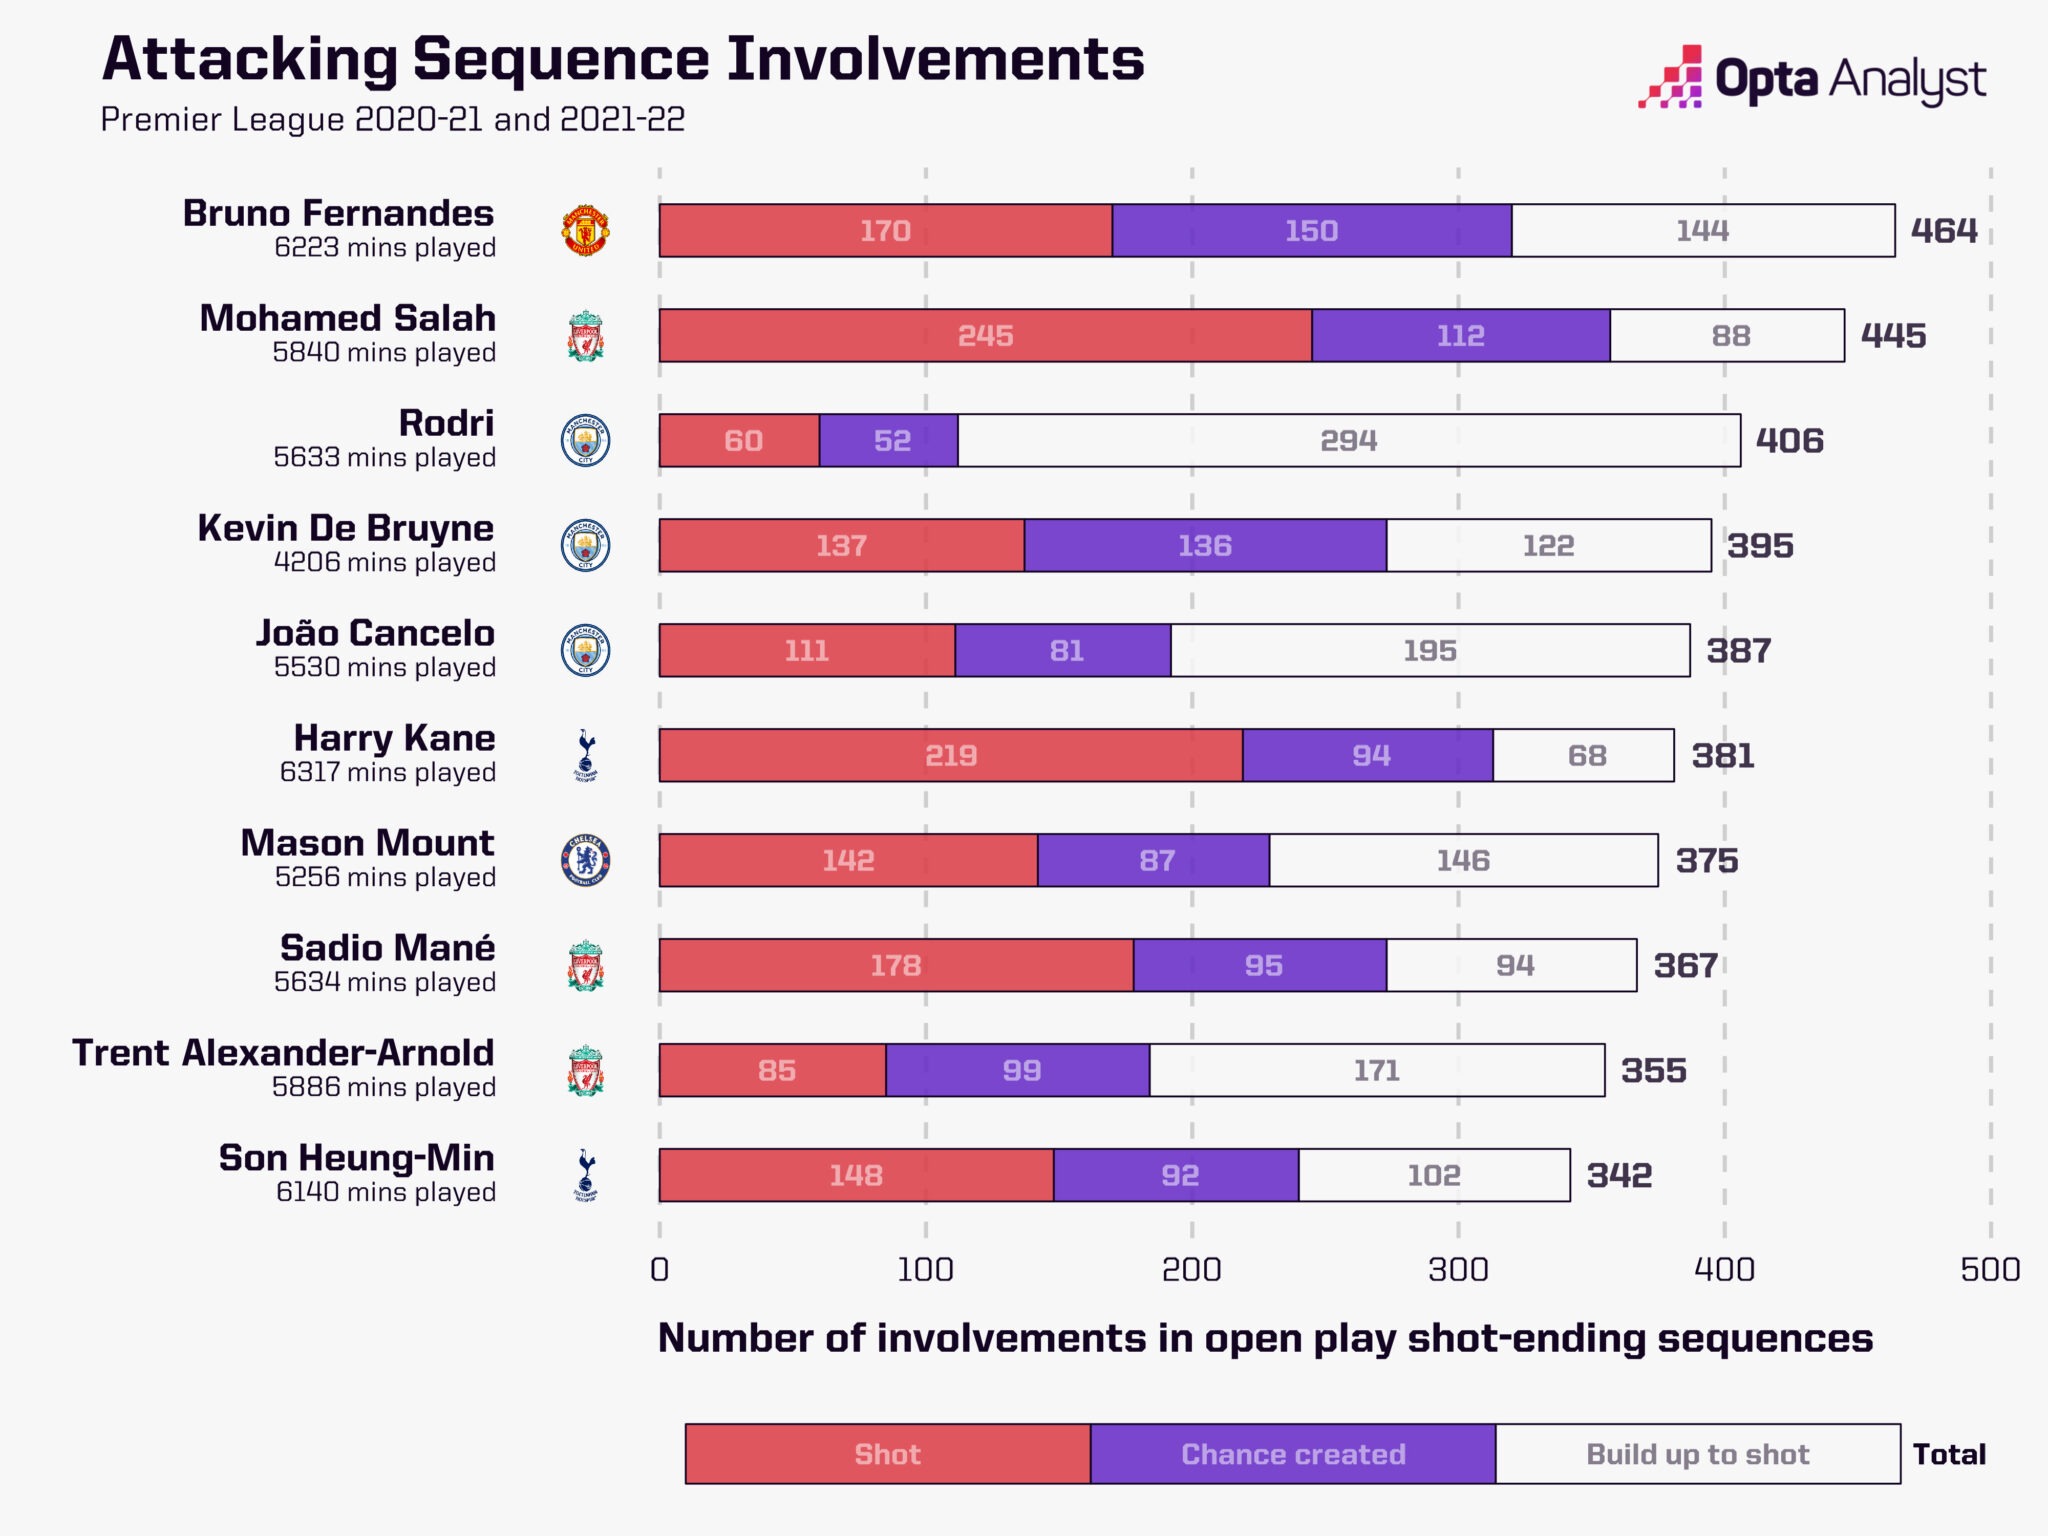 Mount đứng thứ 7 trong nhóm đầu liên quan đến các pha tấn công tại Premier League 2020/21 và 2021/22 - Theo OPTA